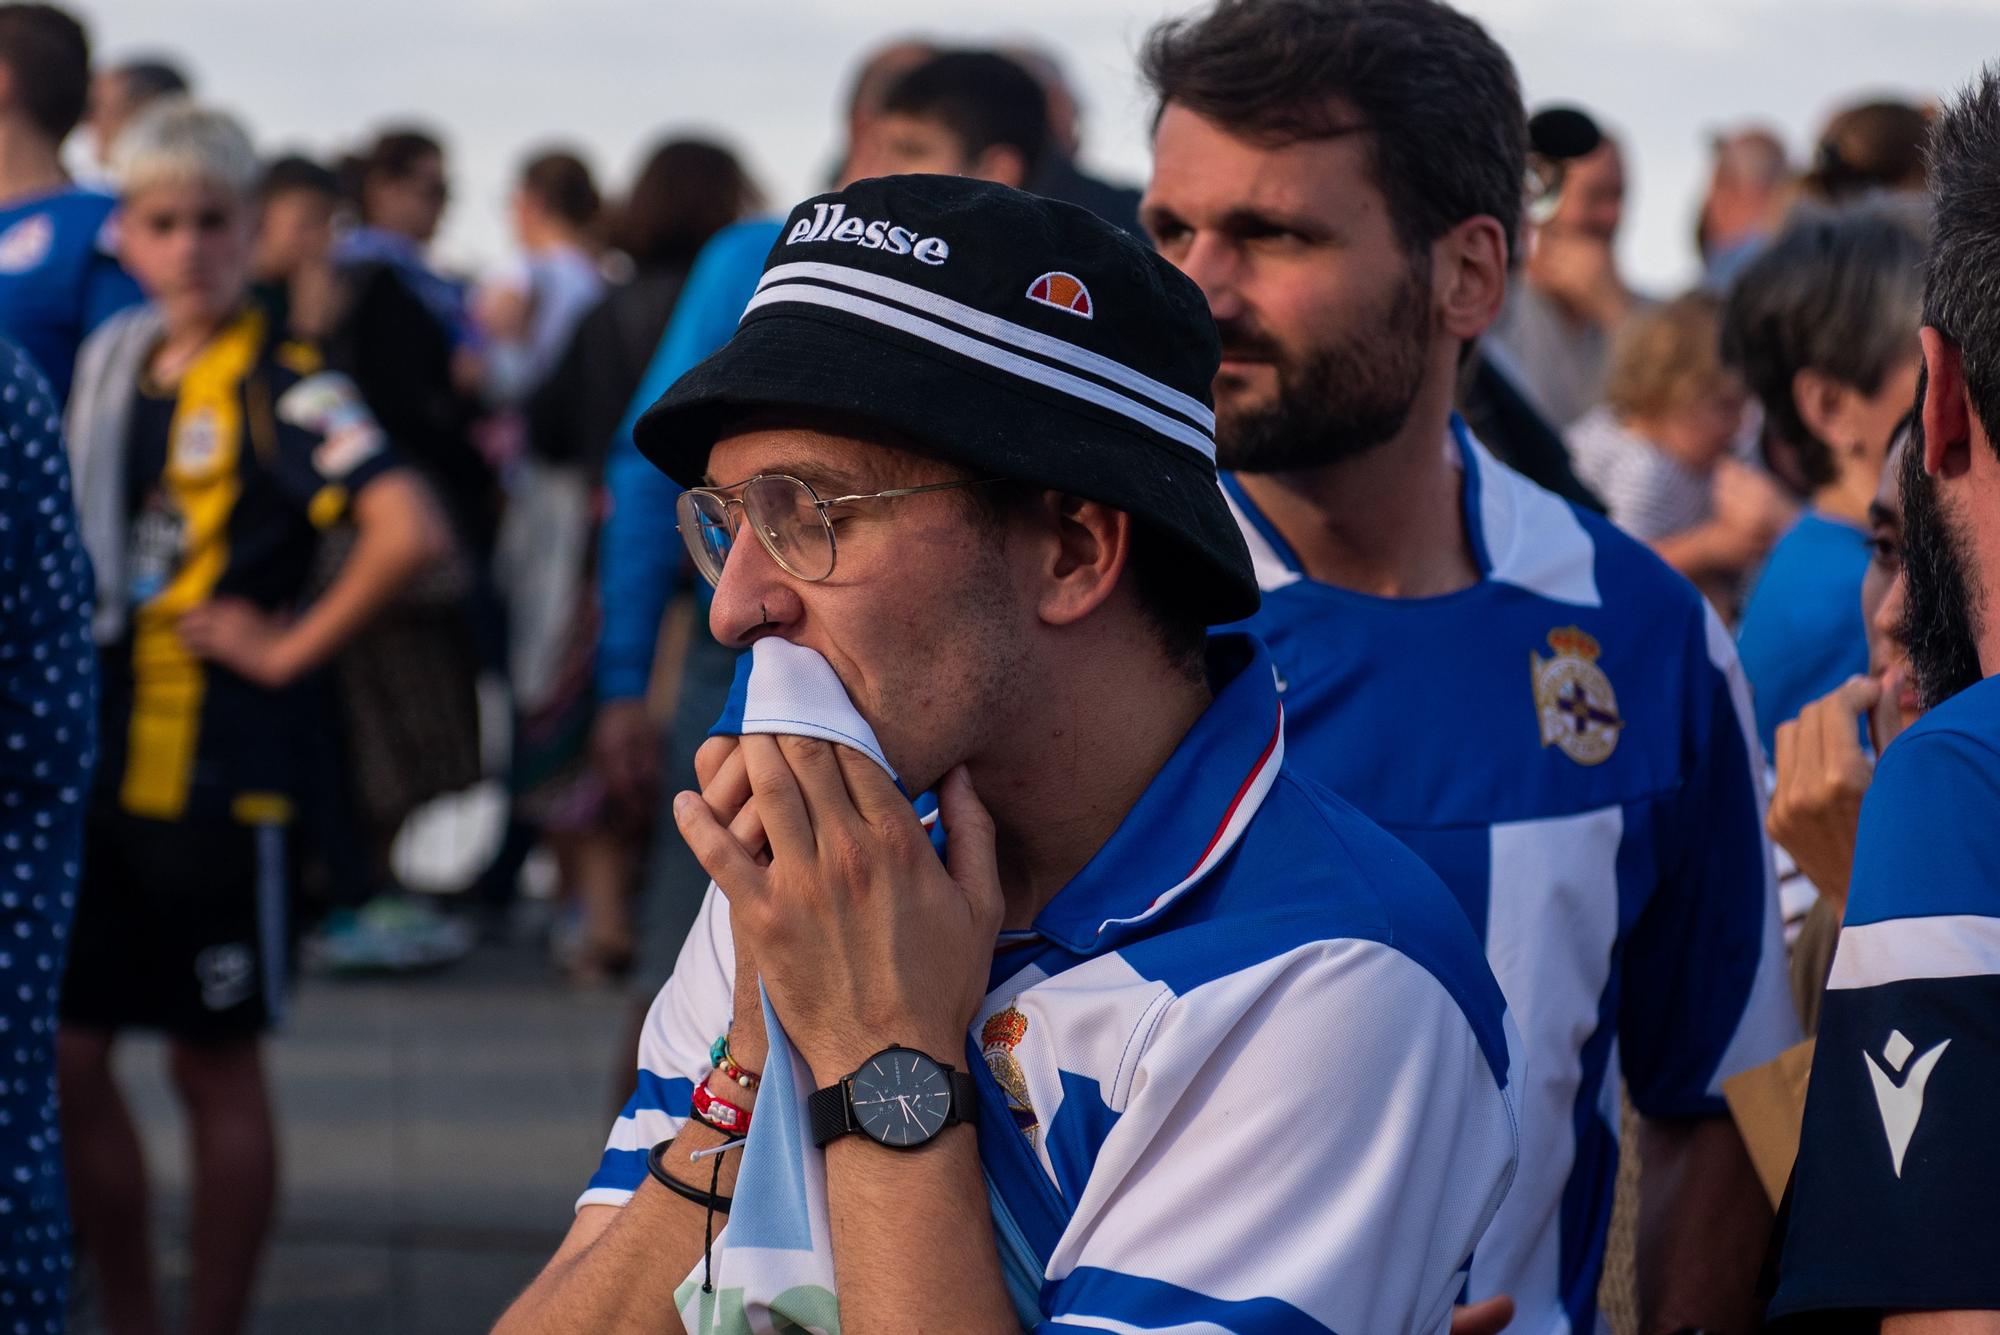 Lágrimas en la explanada del Palacio tras el Castellón-Deportivo